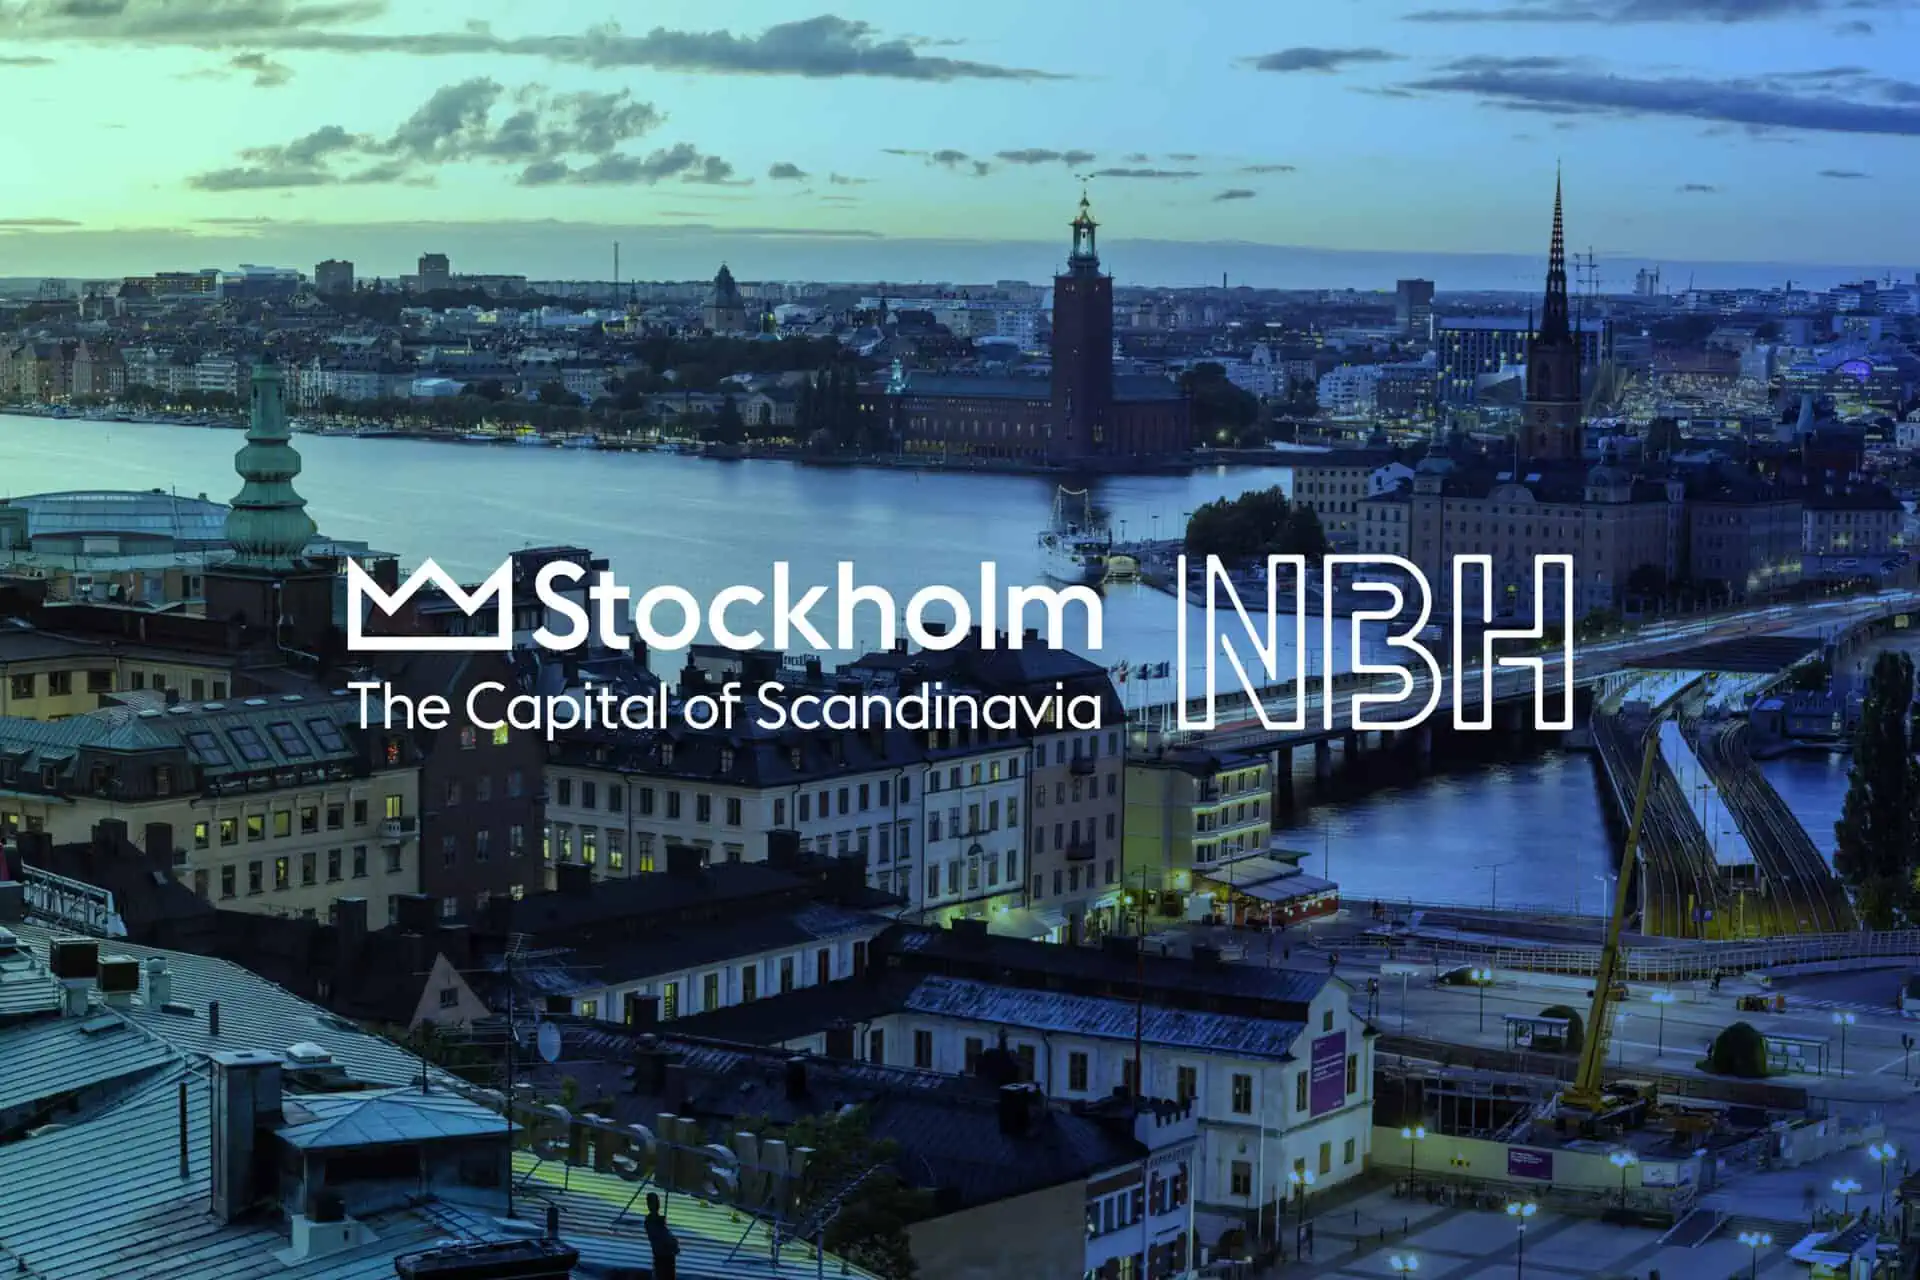 NBH on nimitetty Kiinan digitaalisen markkinoinnin toimistoksi Tukholman liiketoiminta-alueelle.